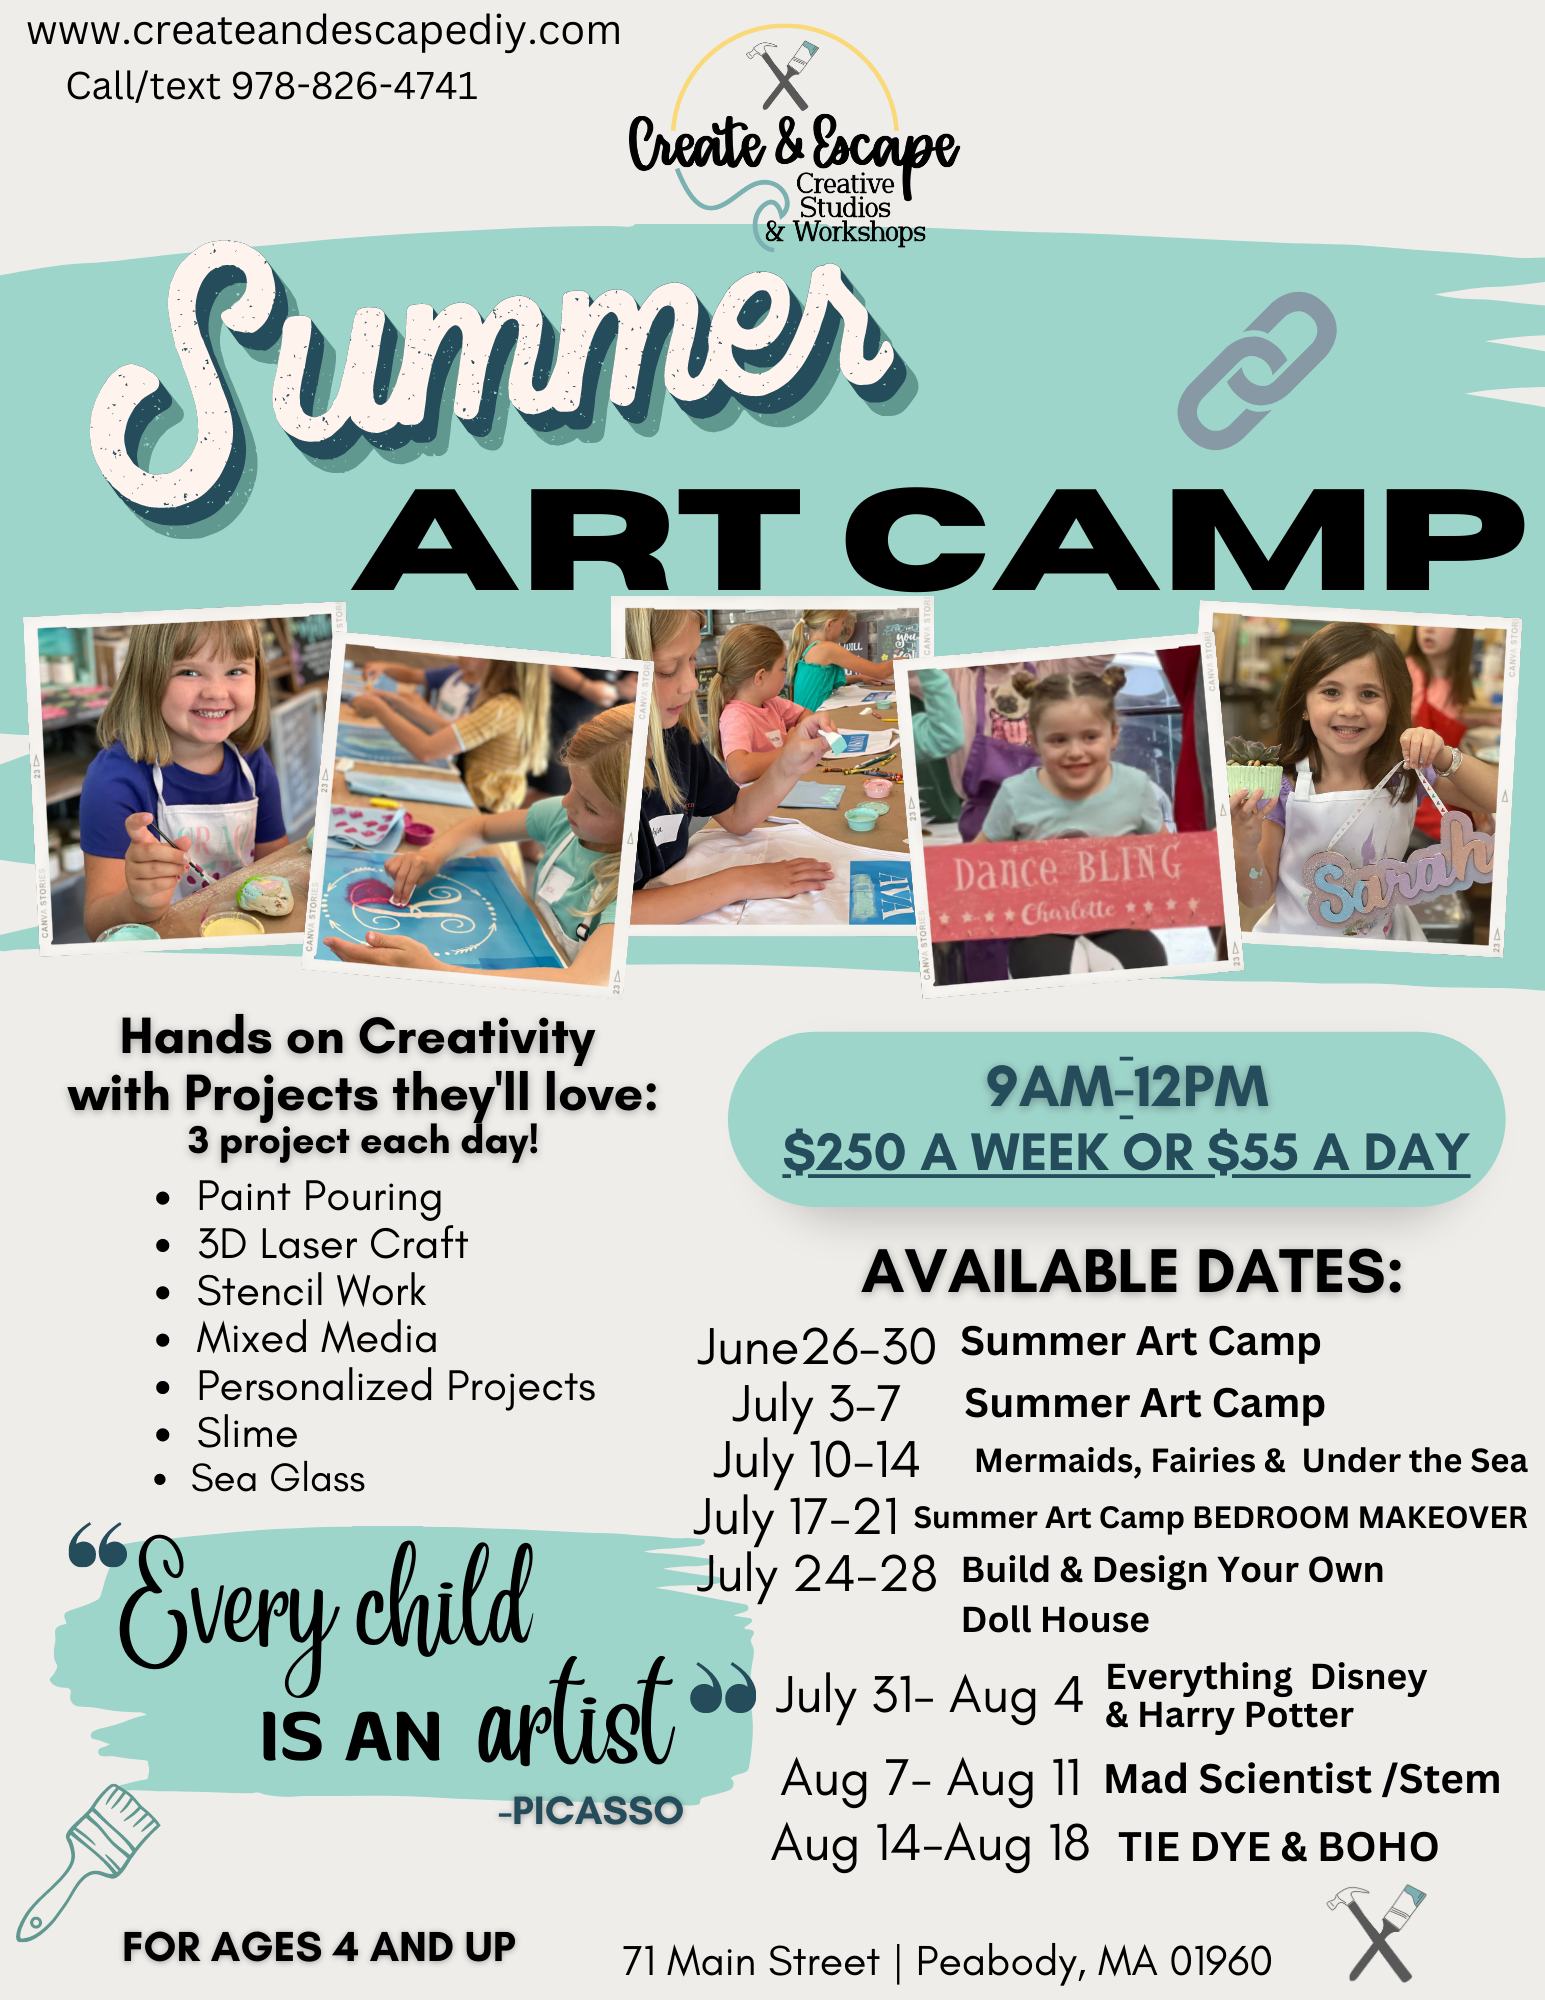 a flyer for a summer art camp.